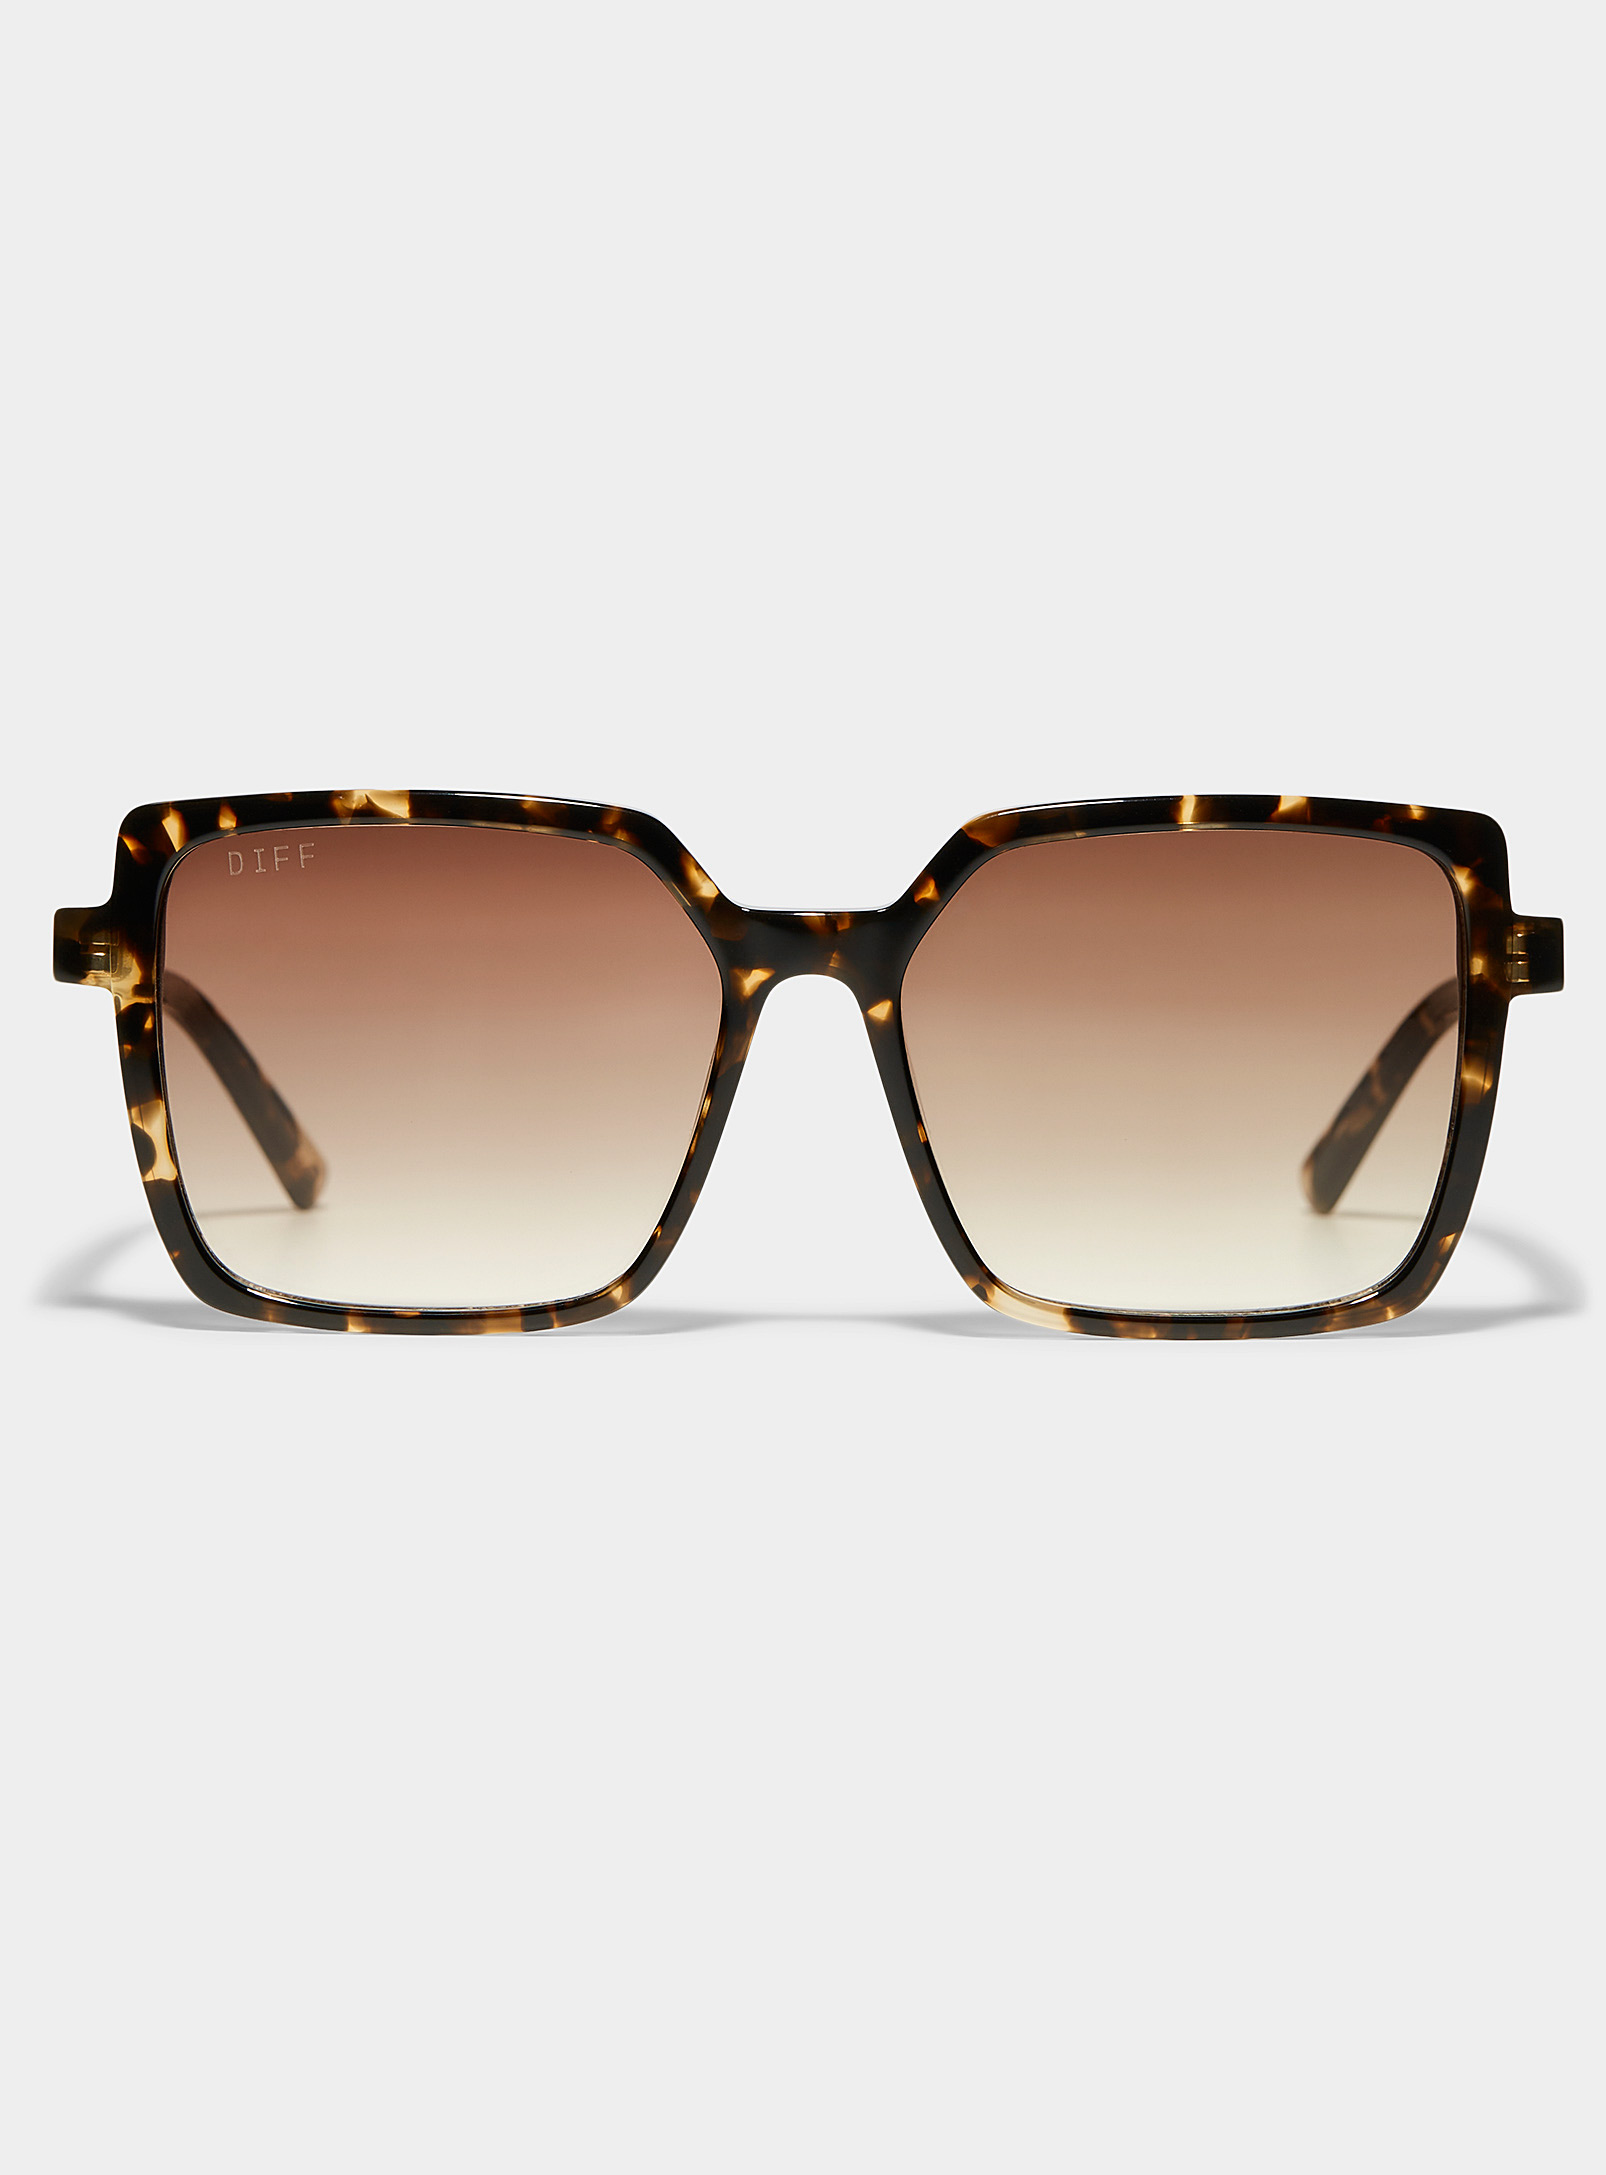 Diff Esme Square Sunglasses In Light Brown